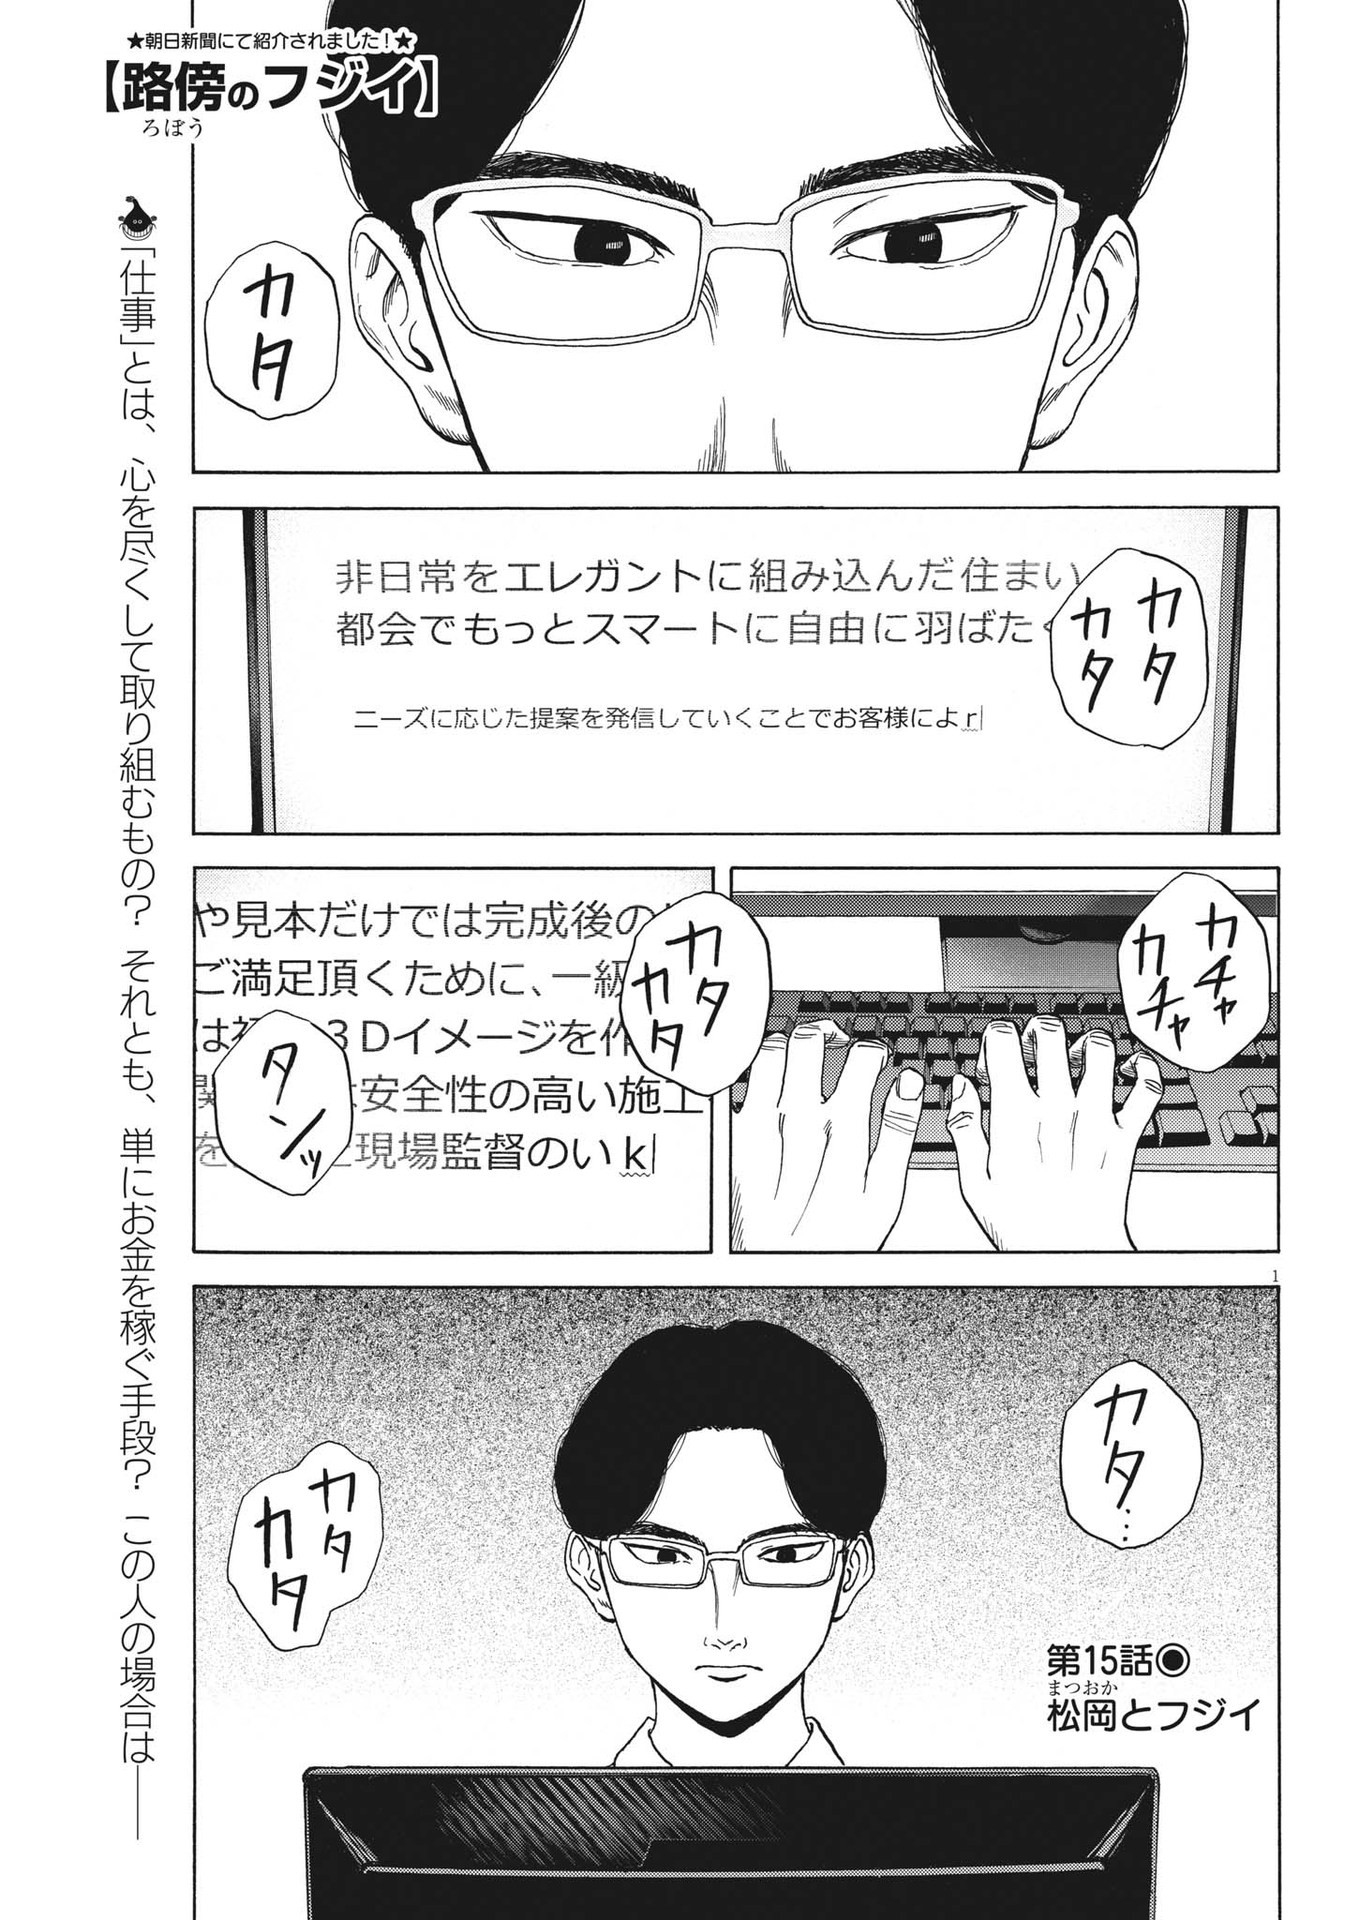 Robou no Fujii – Idai Naru Bonjin kara no Tayori - Chapter 15 - Page 1